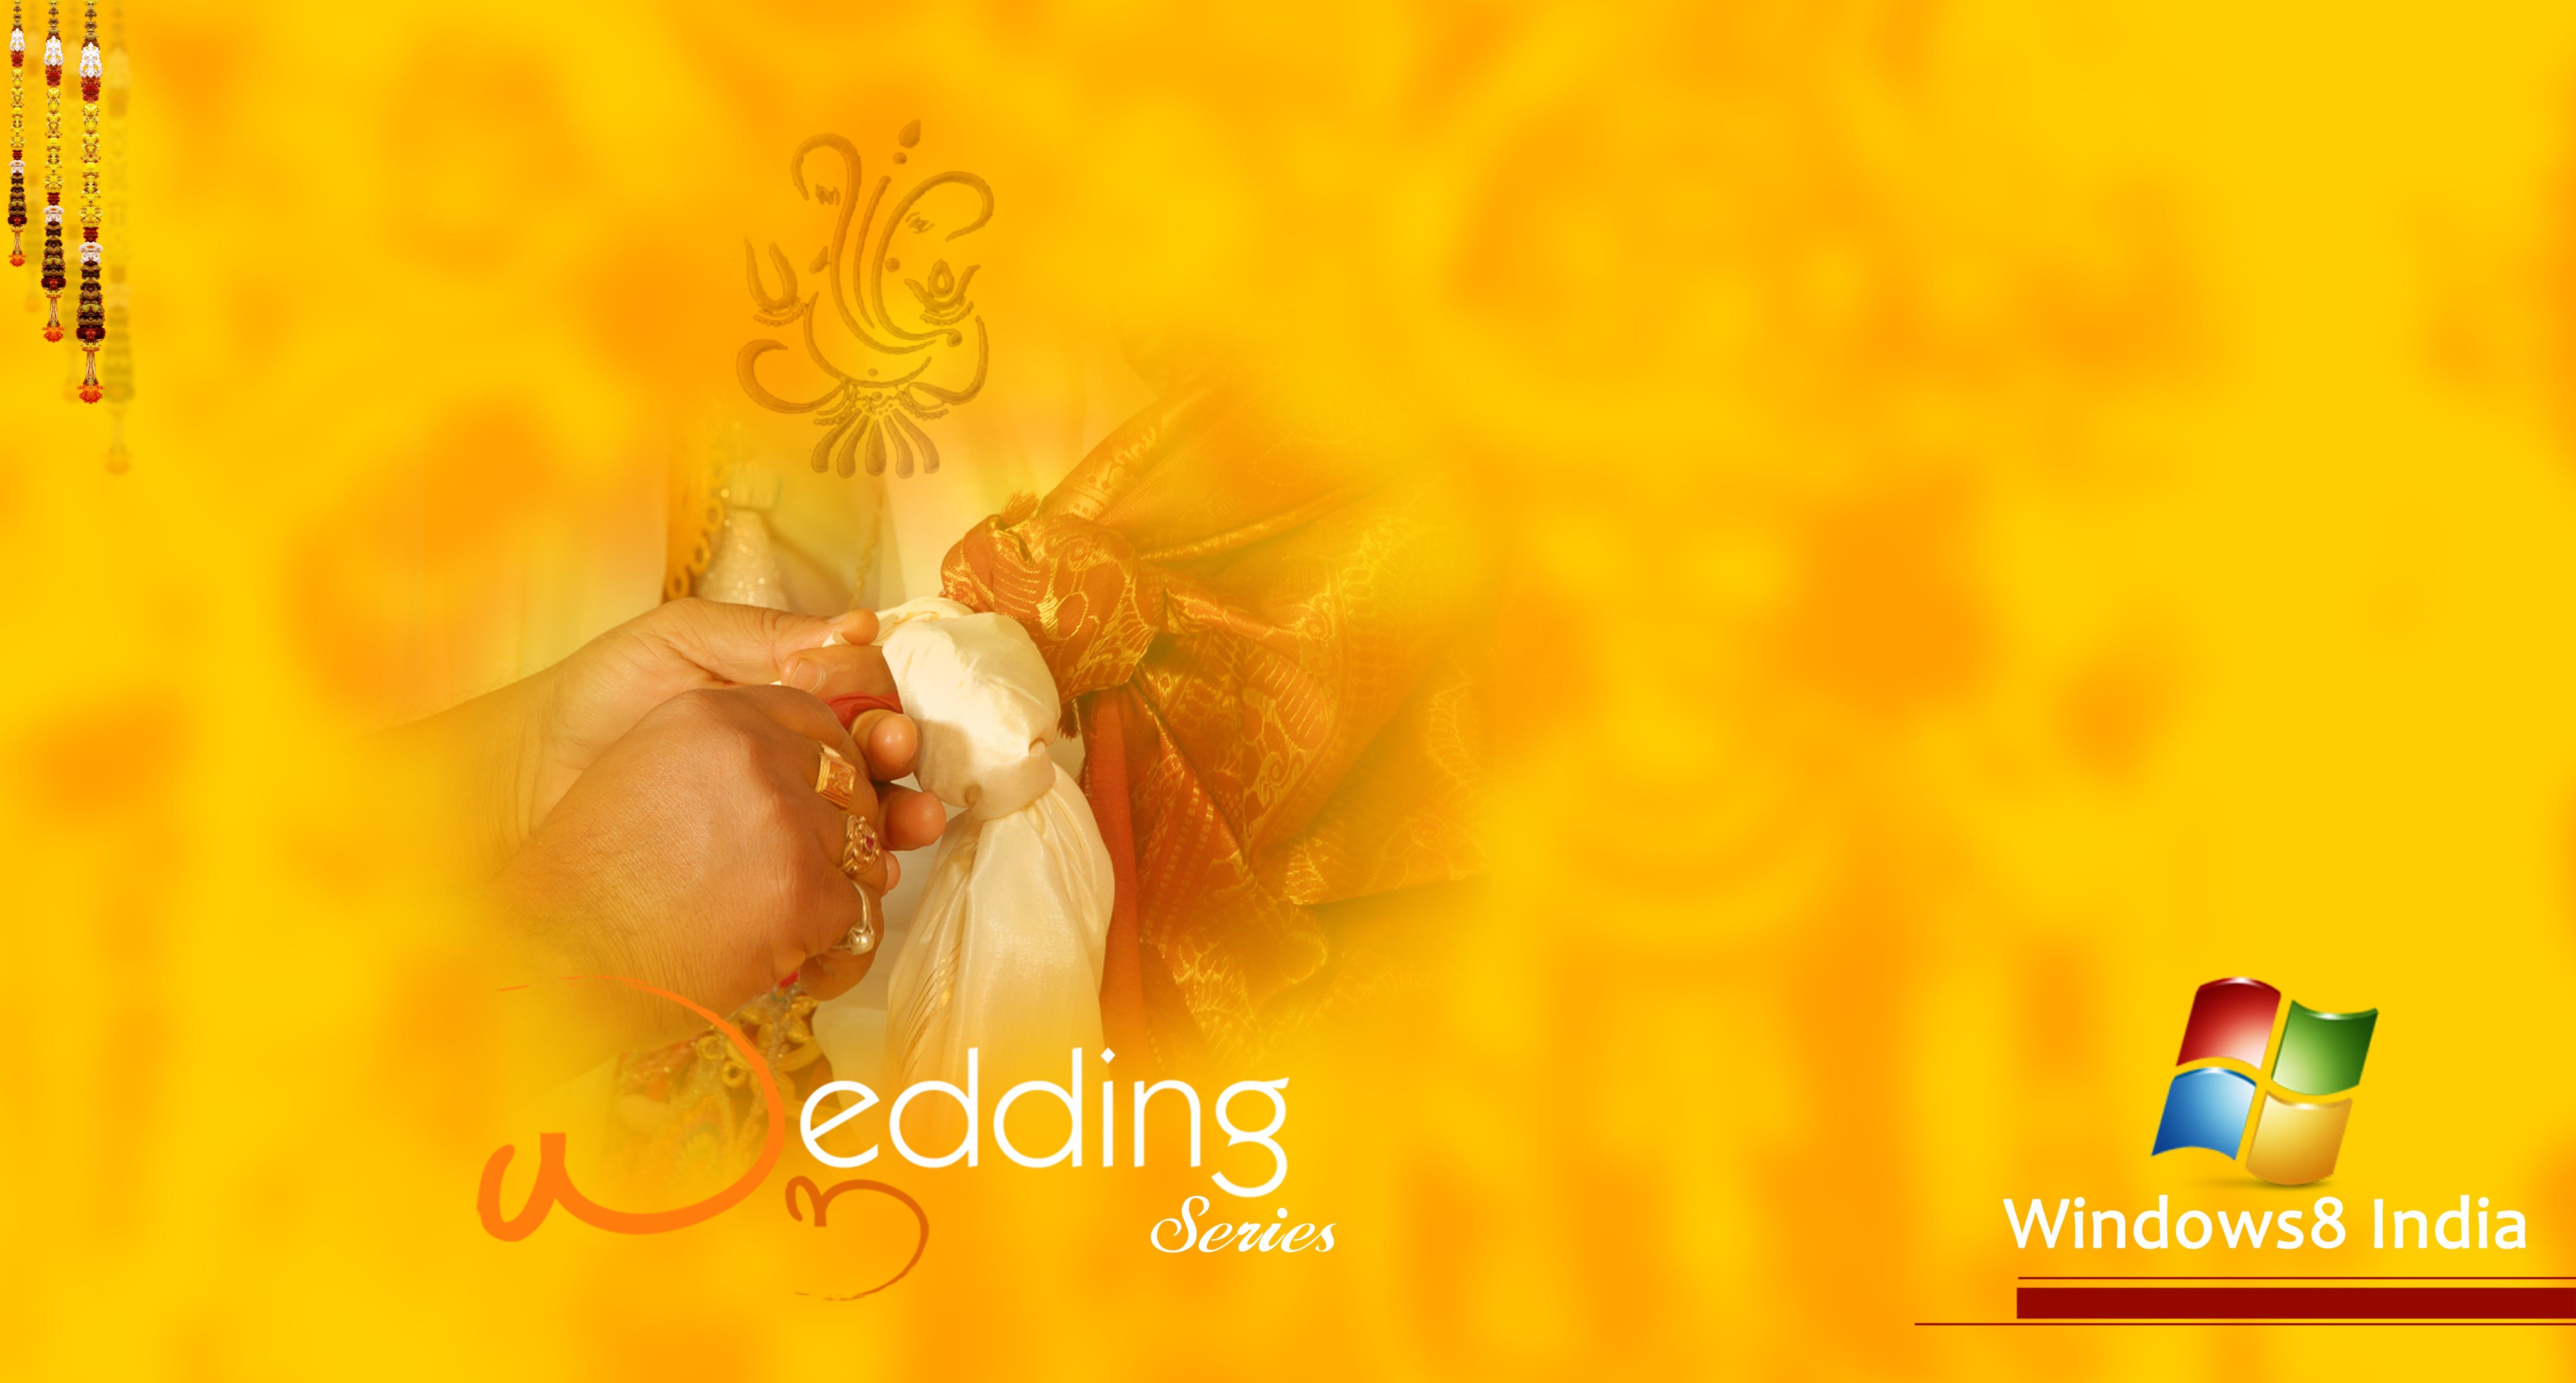 Hình nền đám cưới Hindu với những đường nét hoa văn tinh tế và sắc màu tươi sáng sẽ mang lại cho bạn cảm giác rực rỡ và tràn đầy niềm vui. Cùng xem video ngay để tìm kiếm ý tưởng trang trí đám cưới của mình với hình nền đẹp nhất.